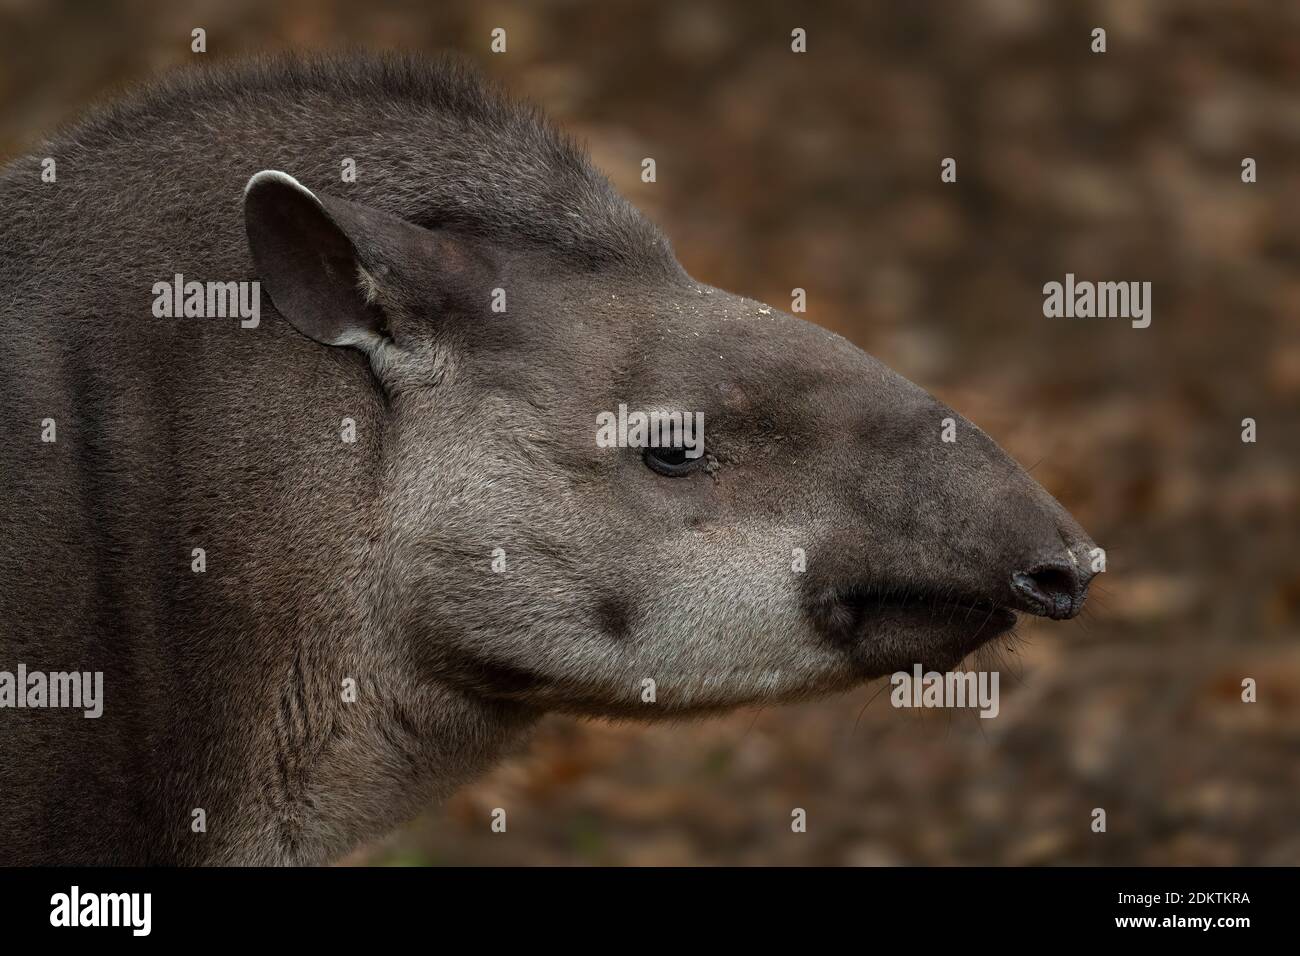 Südamerikanisches Tapir - Tapirus terrestris, großes scheues Säugetier aus südamerikanischen Wäldern und Sträuchern, Ecuador. Stockfoto